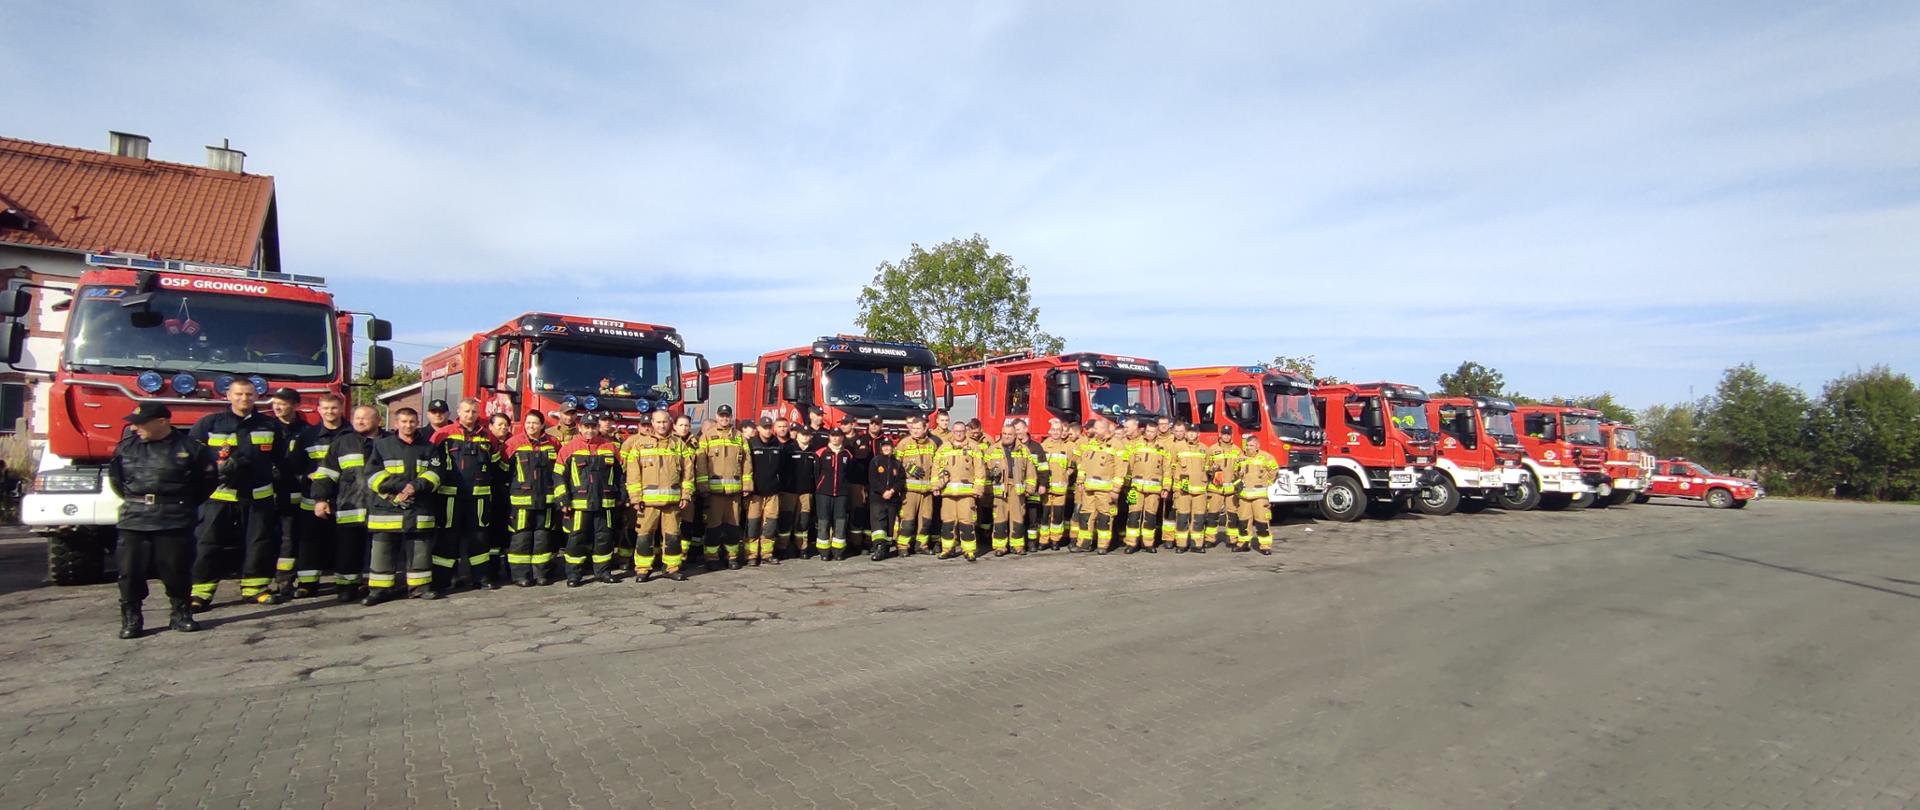 Na dużym placu ustawiło się kilkudziesięciu strażaków w mundurach. Za nimi kilkanaście dużych samochodów strażackich. Pochmurne niebo.